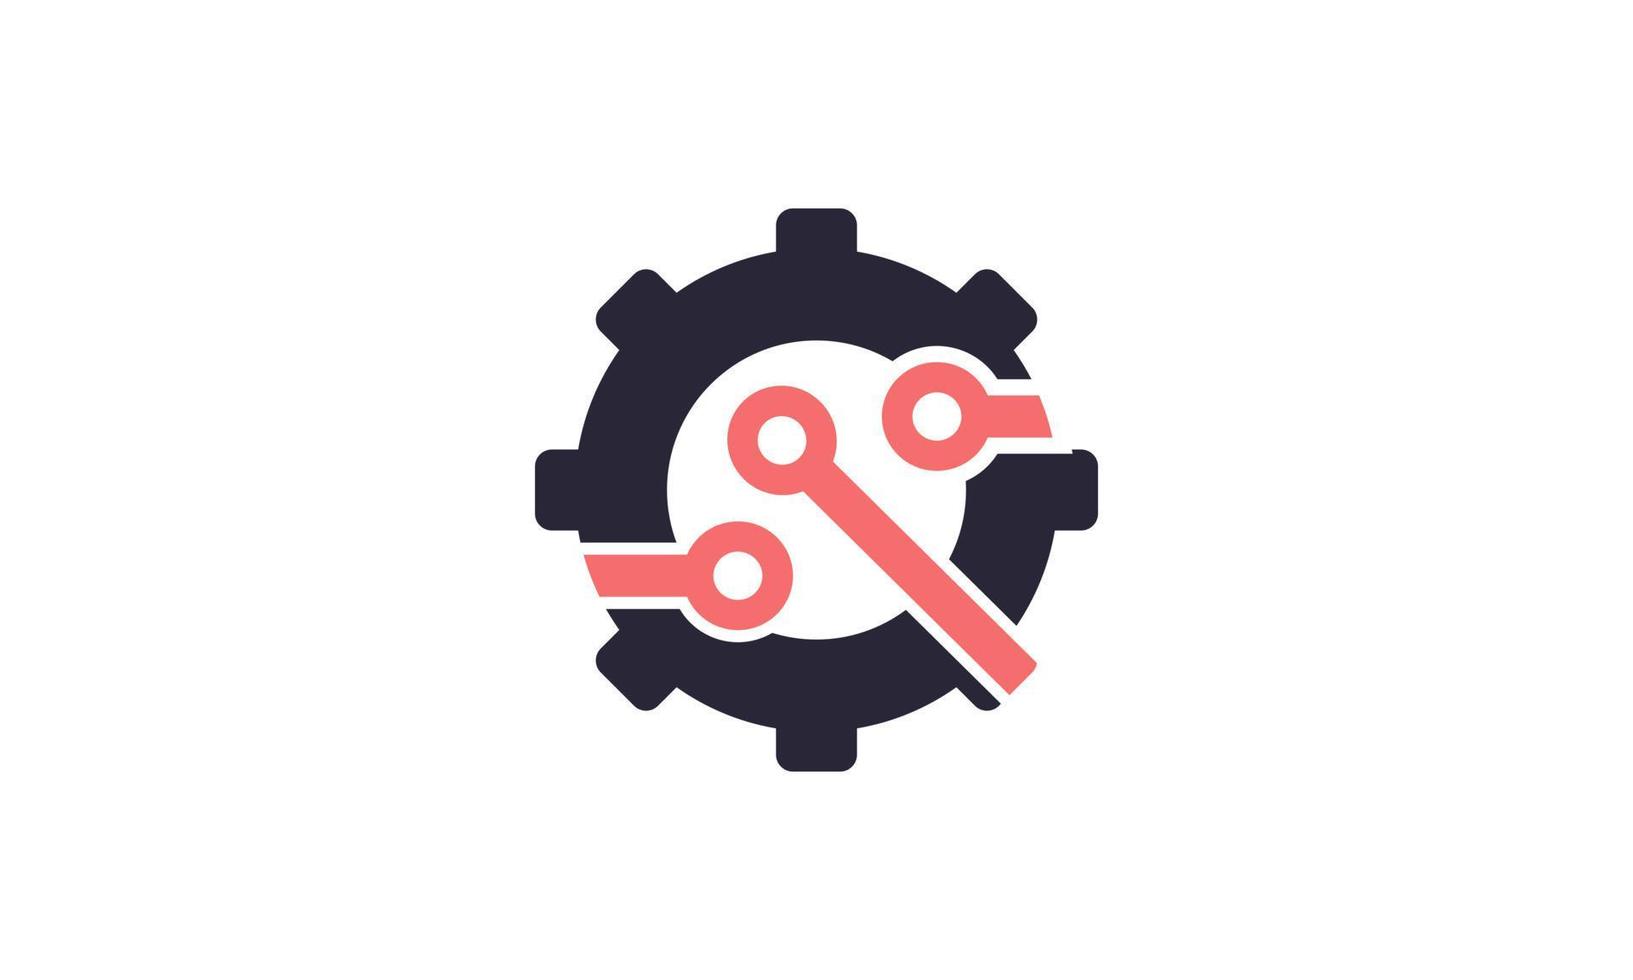 voorraad vector abstract versnelling techno logo ontwerpen concept vector vergroten logo